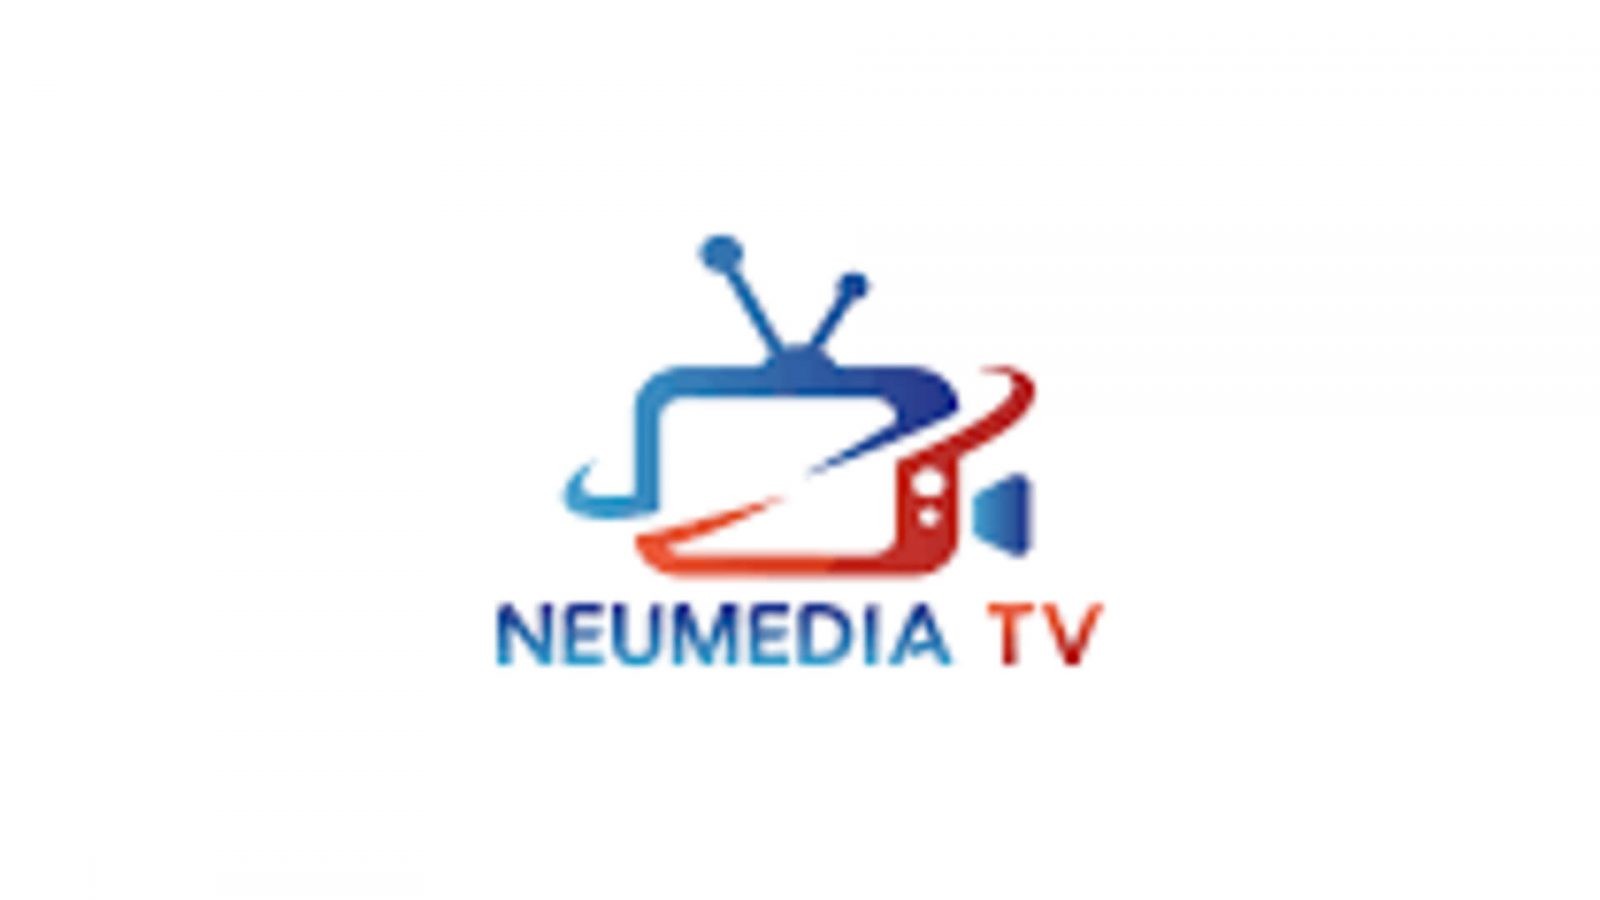 NueMedia TV IPTV